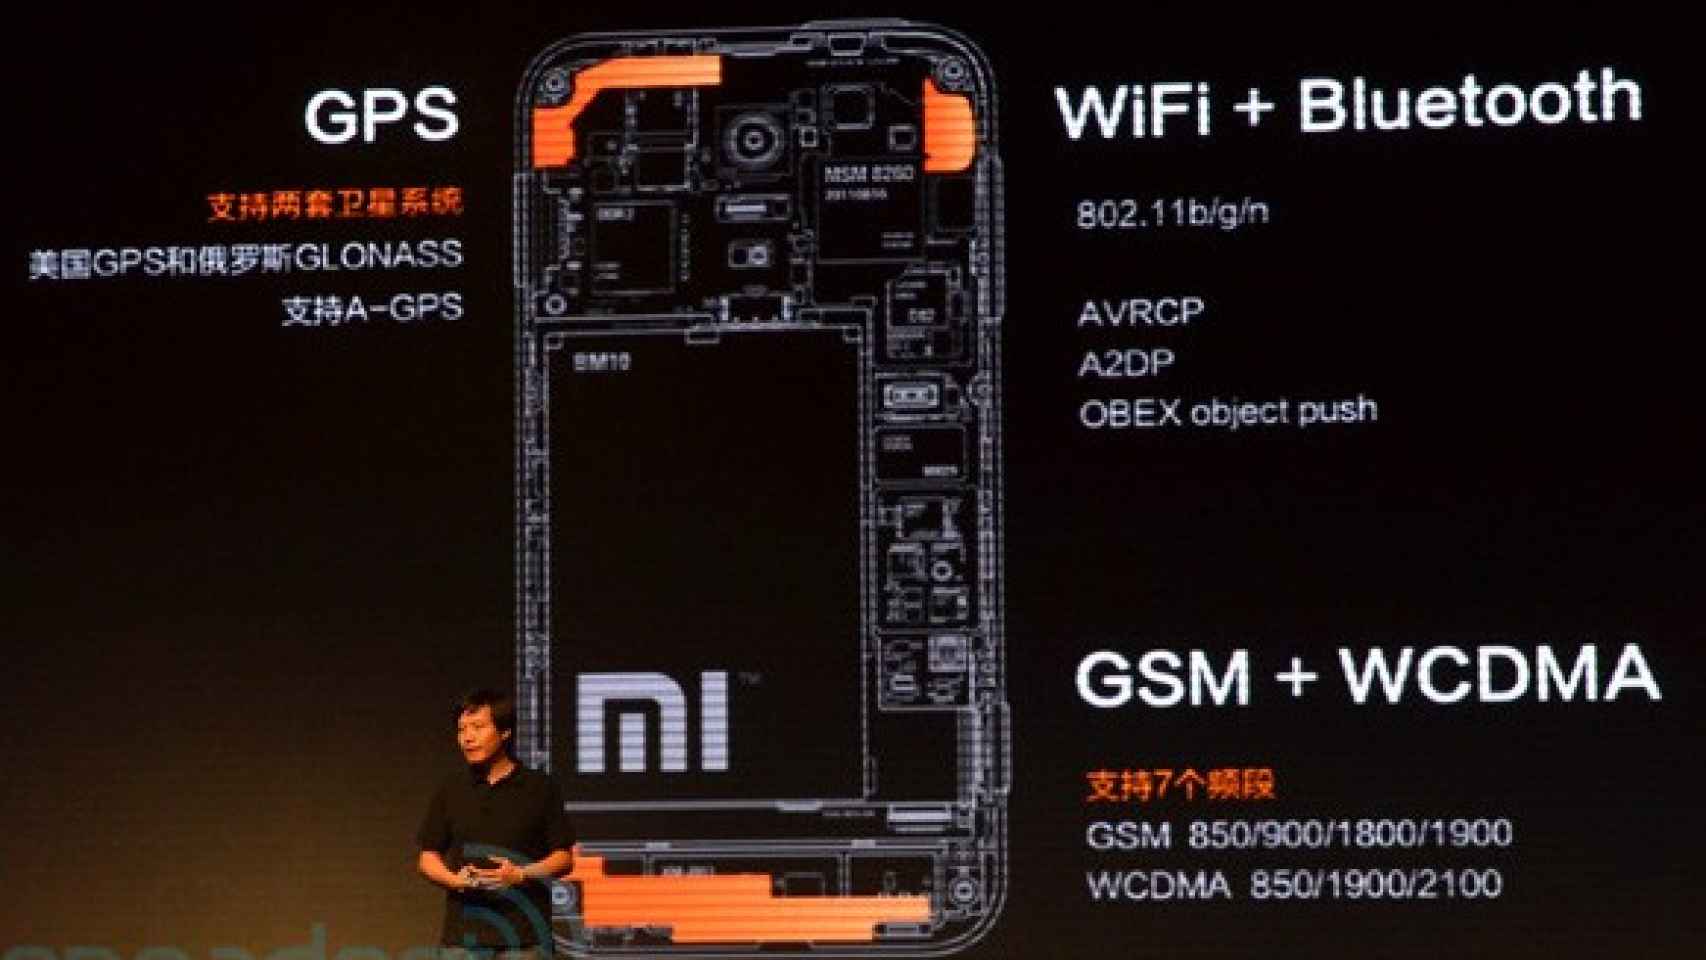 Este es el MIUI Phone: Xiaomi M1, un Dual core 1.5 Ghz por 310$